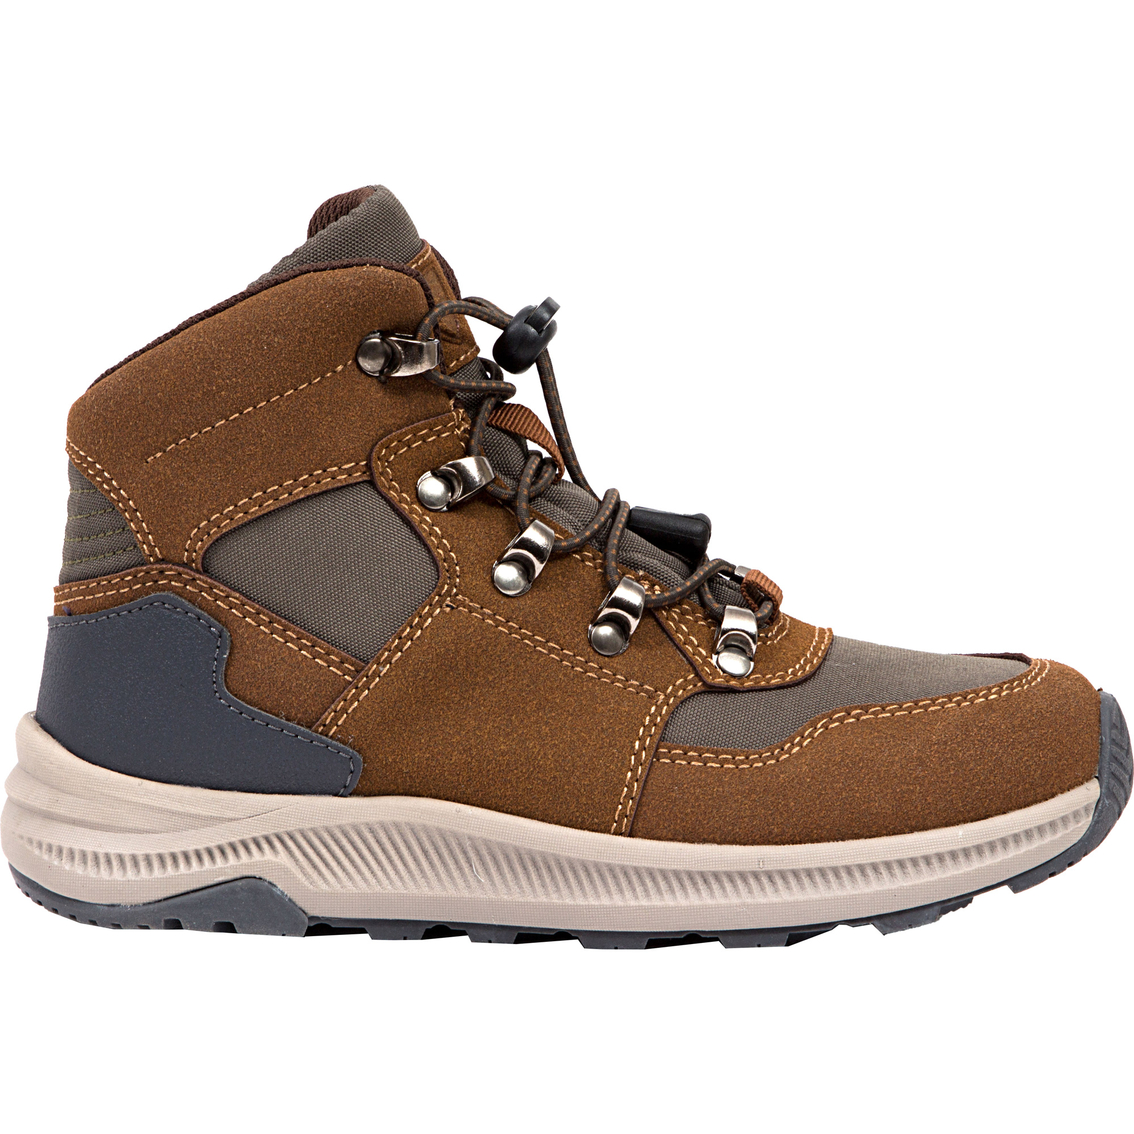 Deer Stags Grade School Boys Peak Jr Casual Hybrid Hiker High Top Sneaker Boots - Image 3 of 8